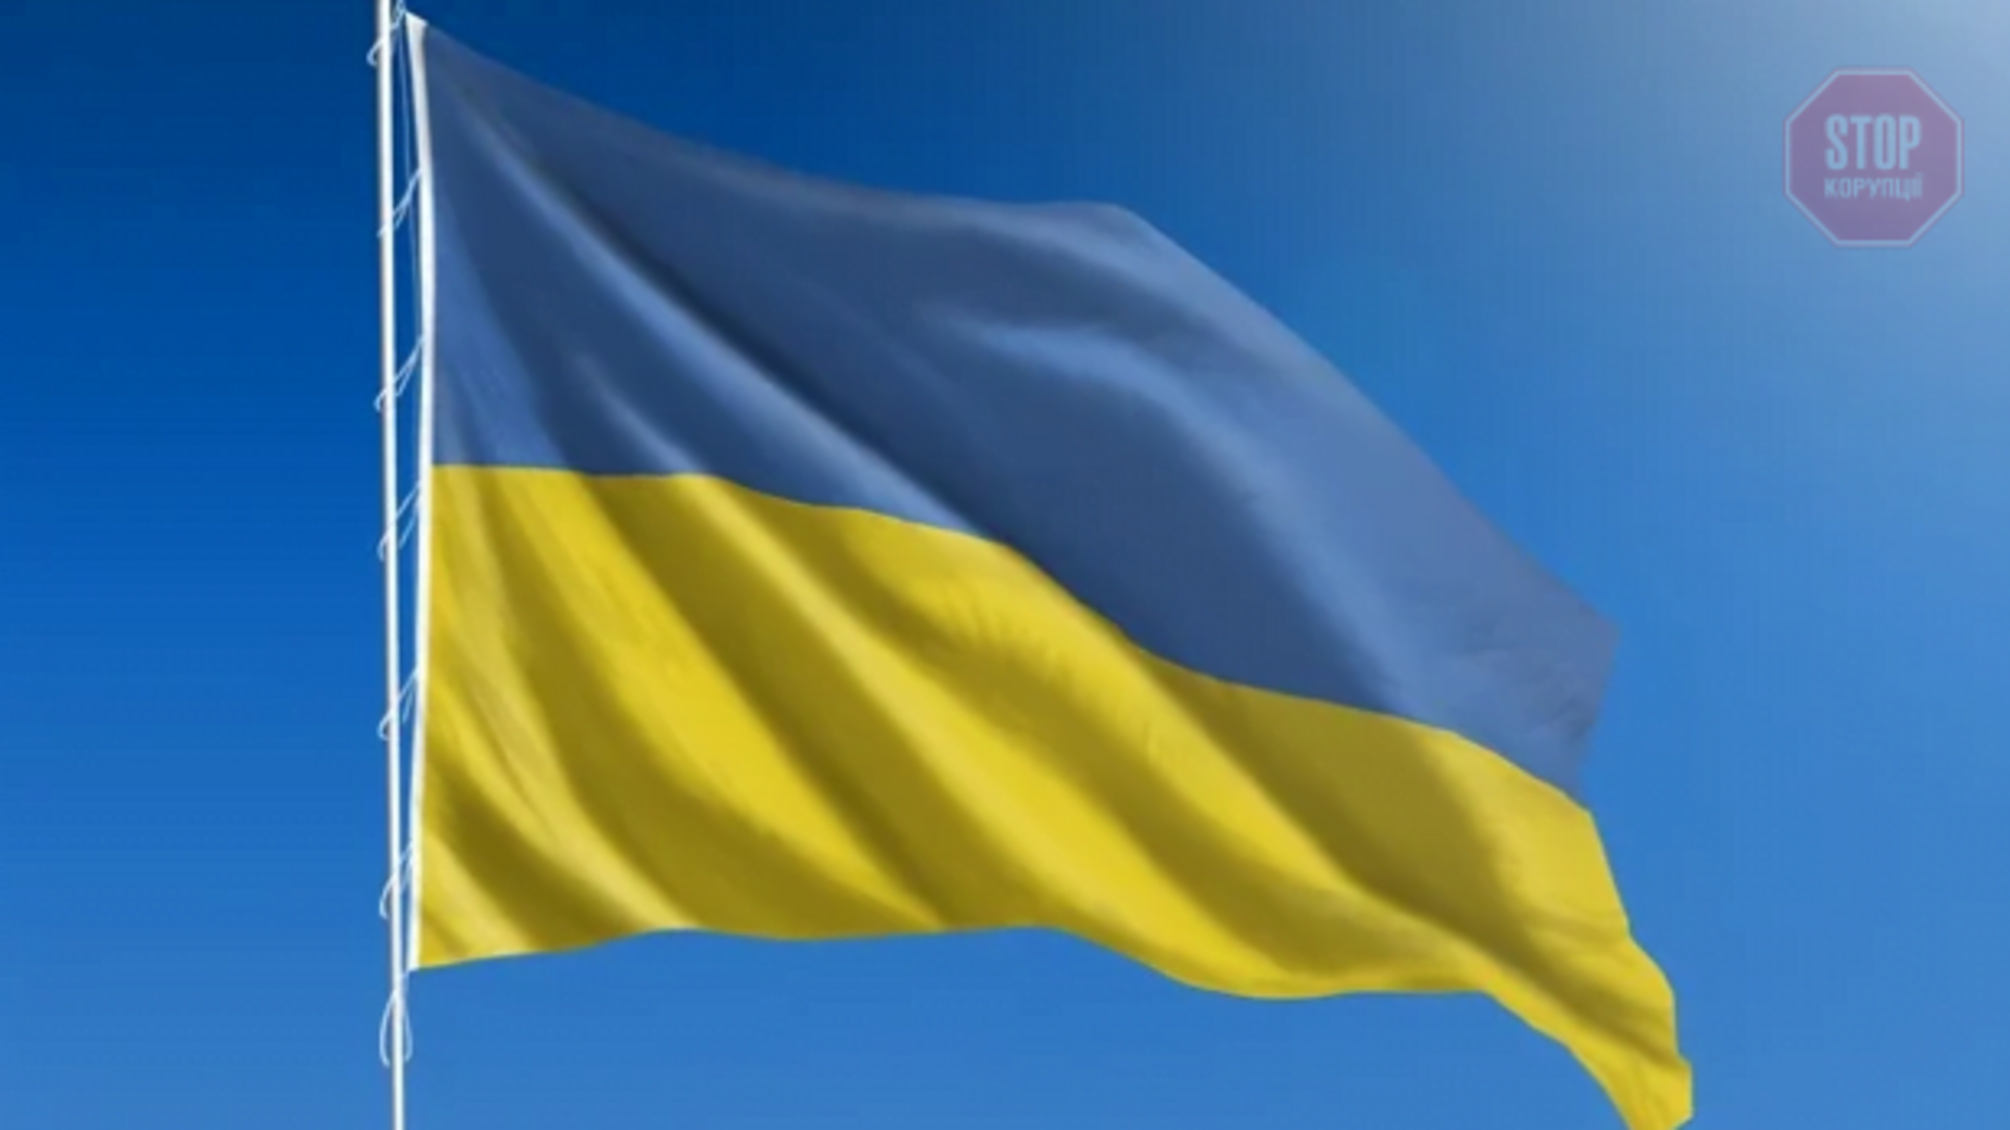 Опрос: Почти 70% украинцев считают, что страна движется в неправильном направлении